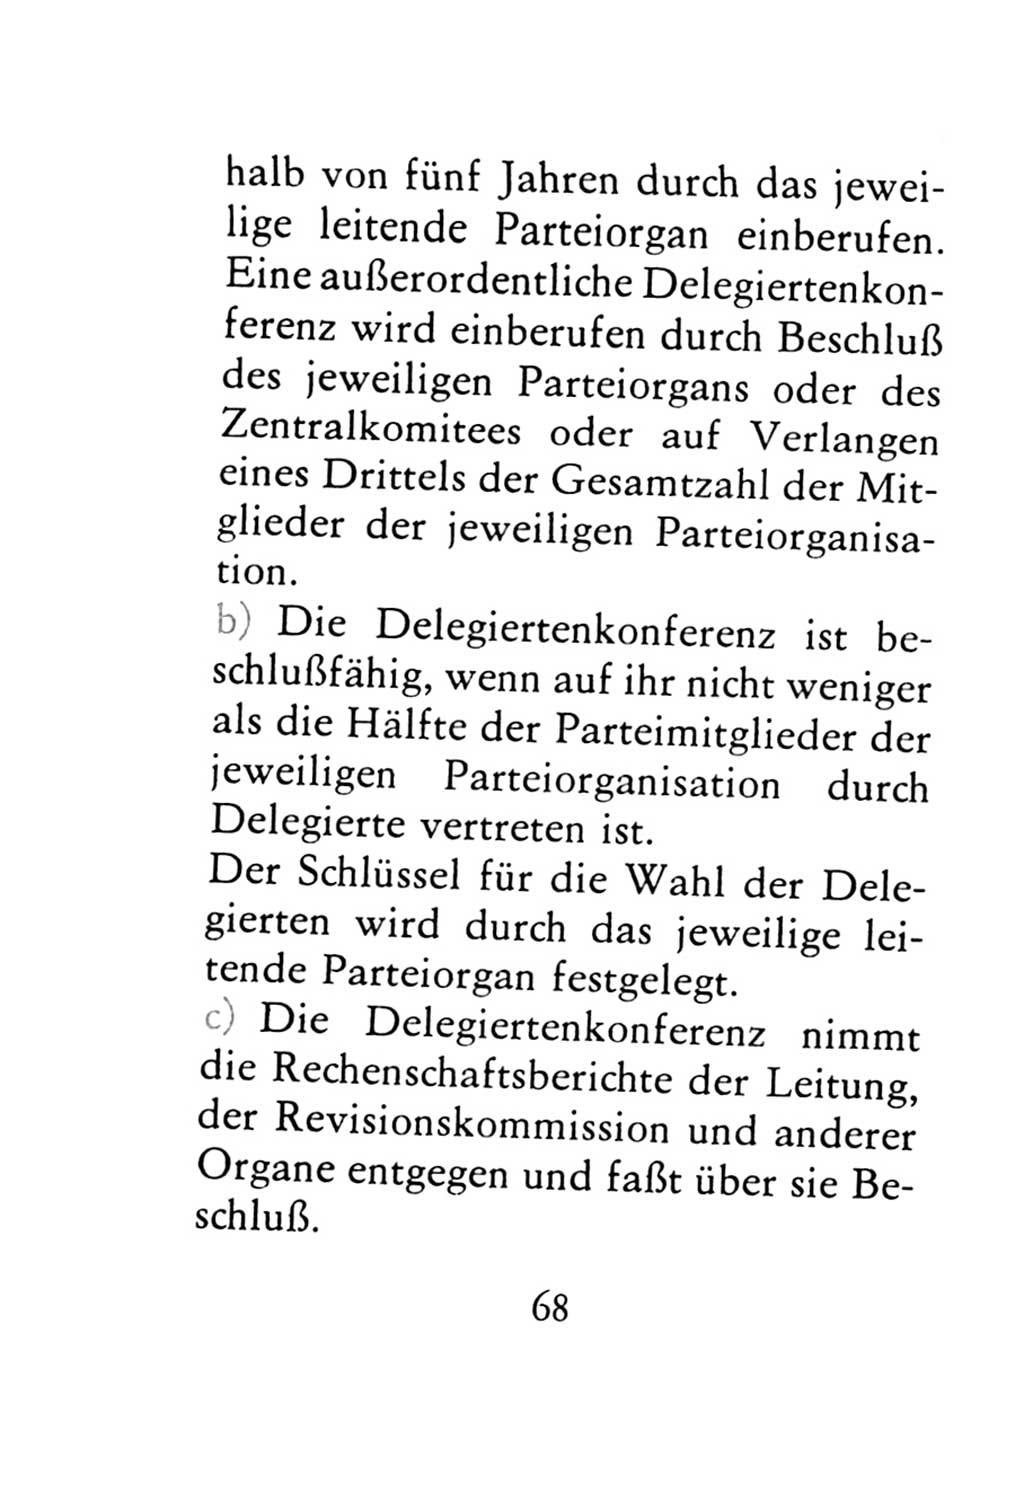 Statut der Sozialistischen Einheitspartei Deutschlands (SED) 1971, Seite 68 (St. SED DDR 1971, S. 68)